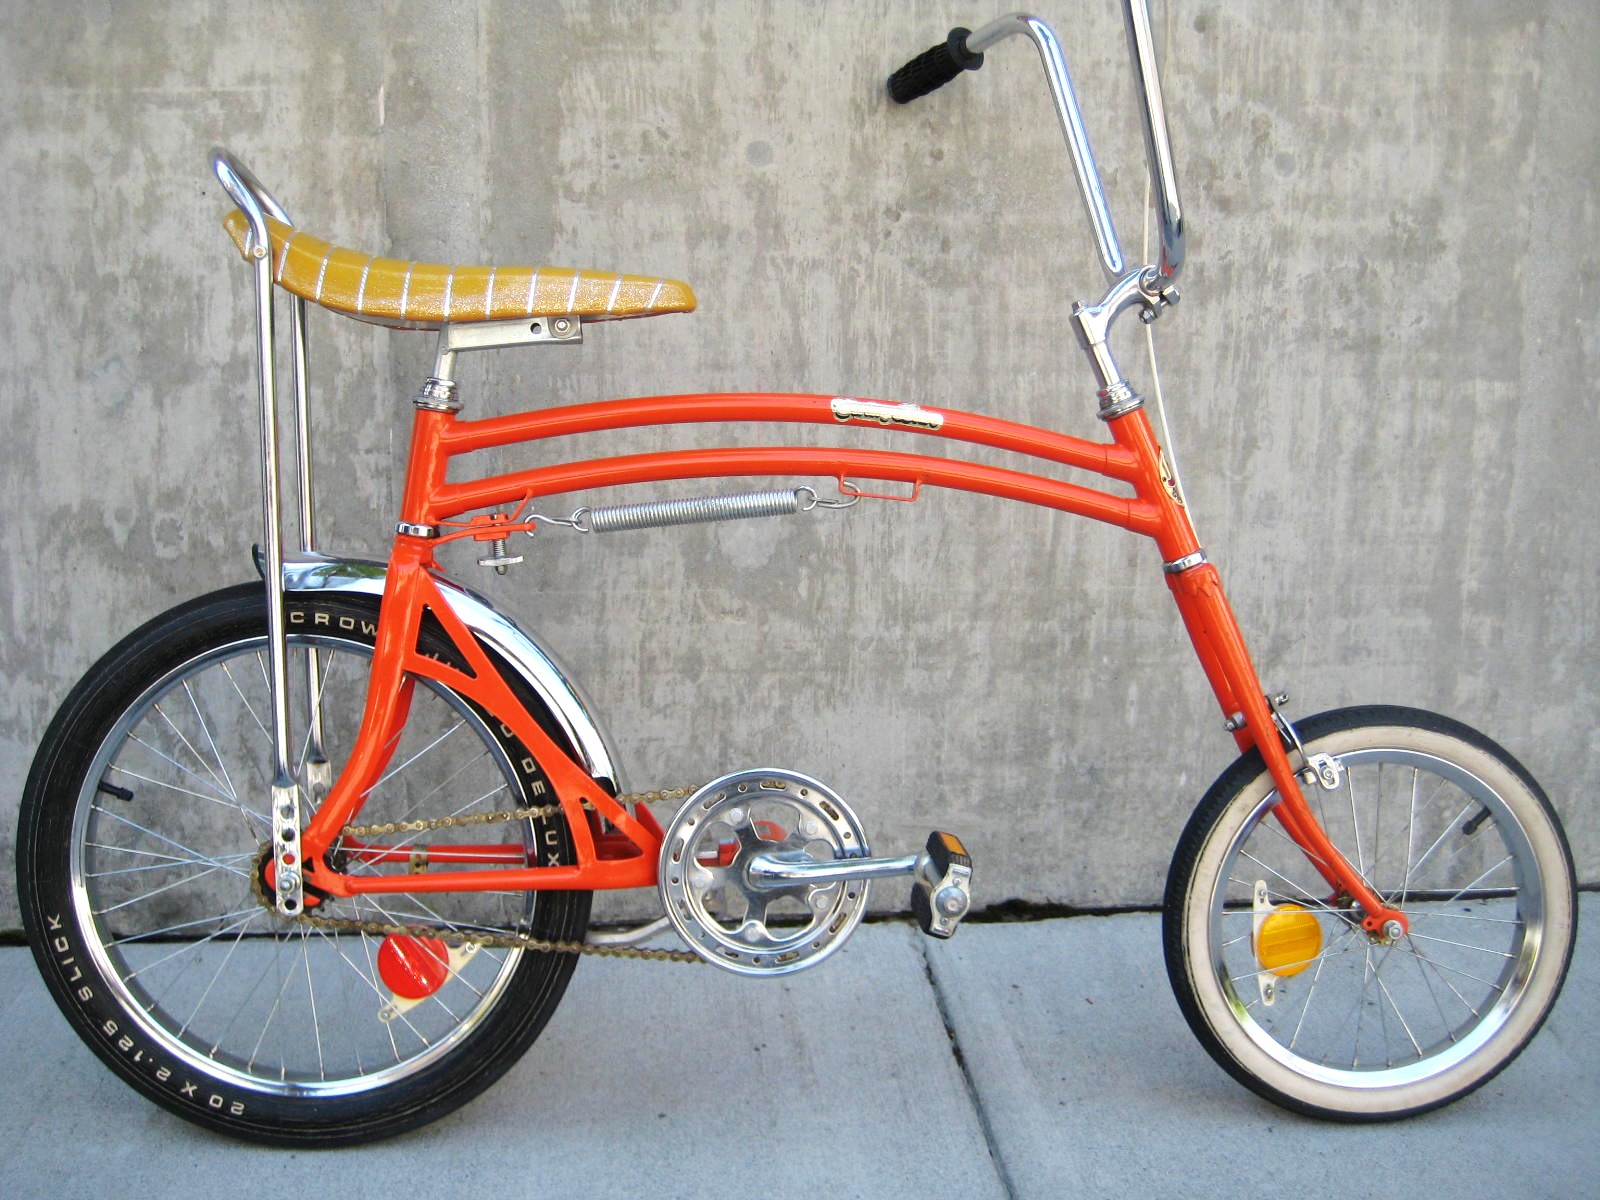 the swing bike